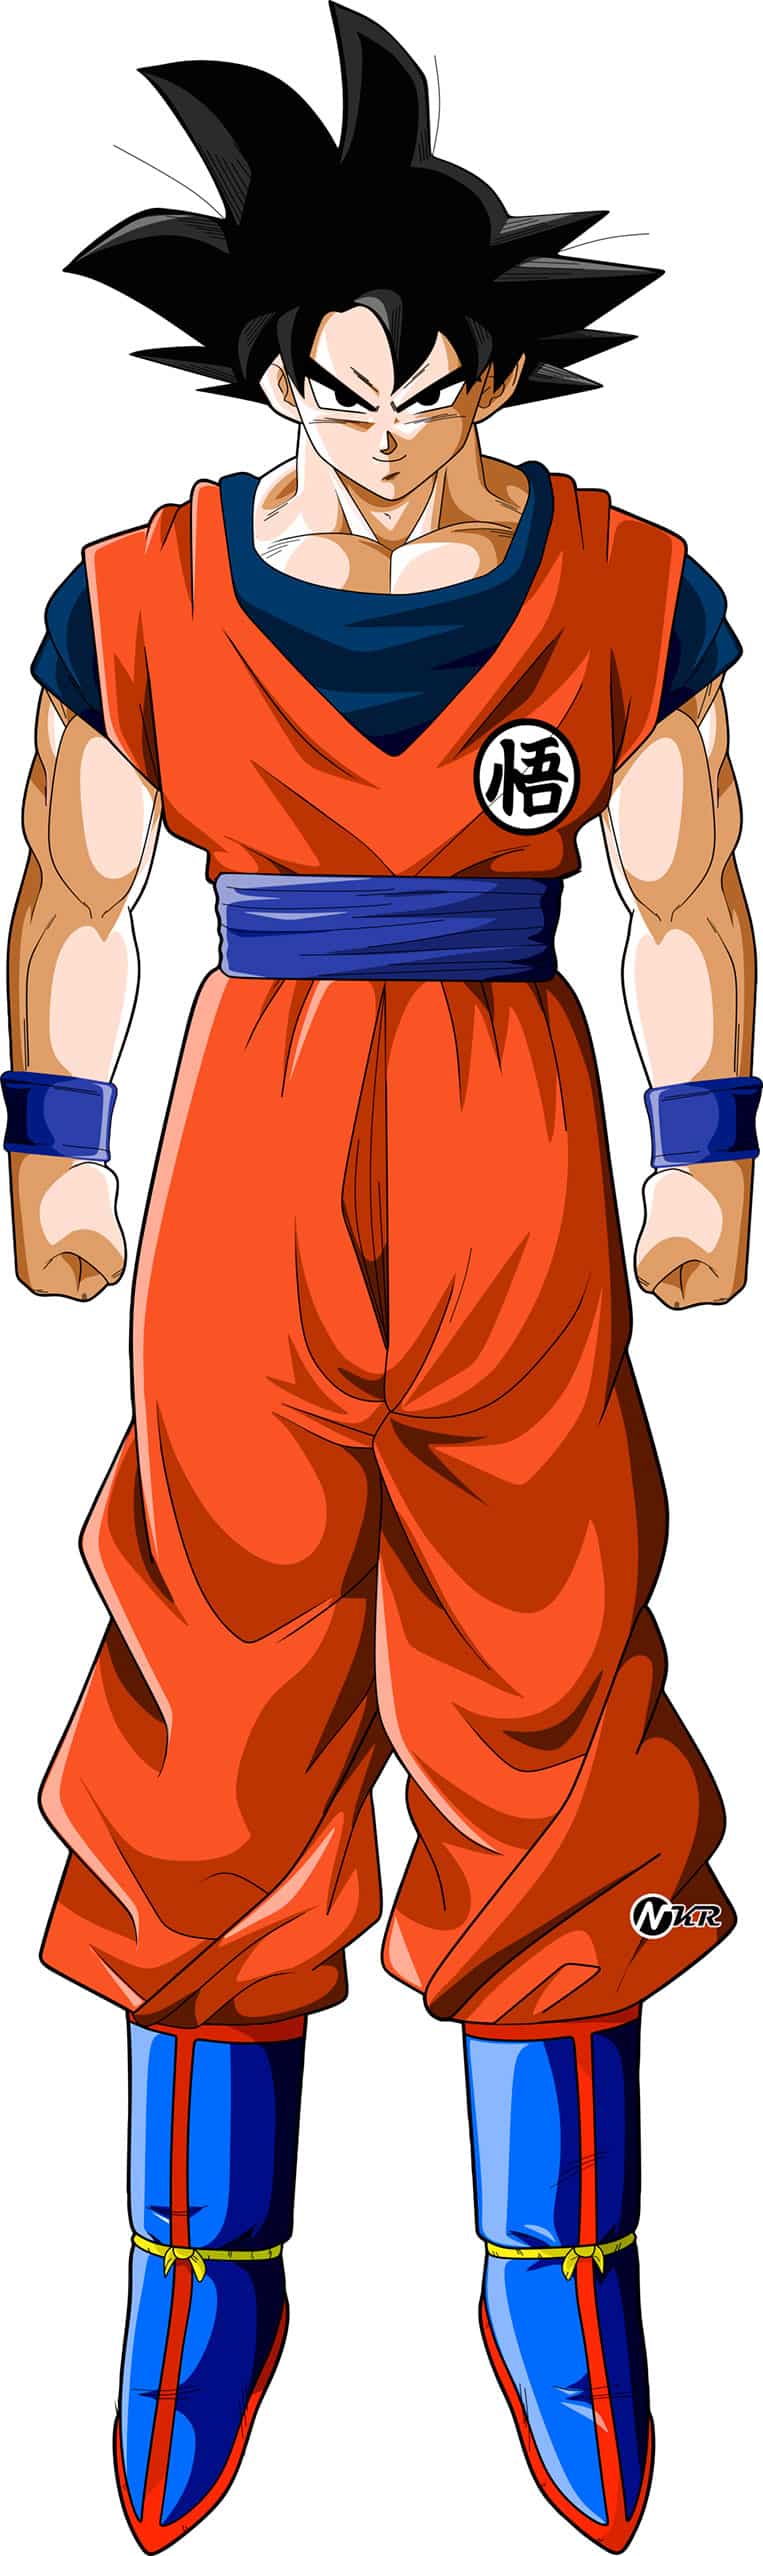 Goku na forma base